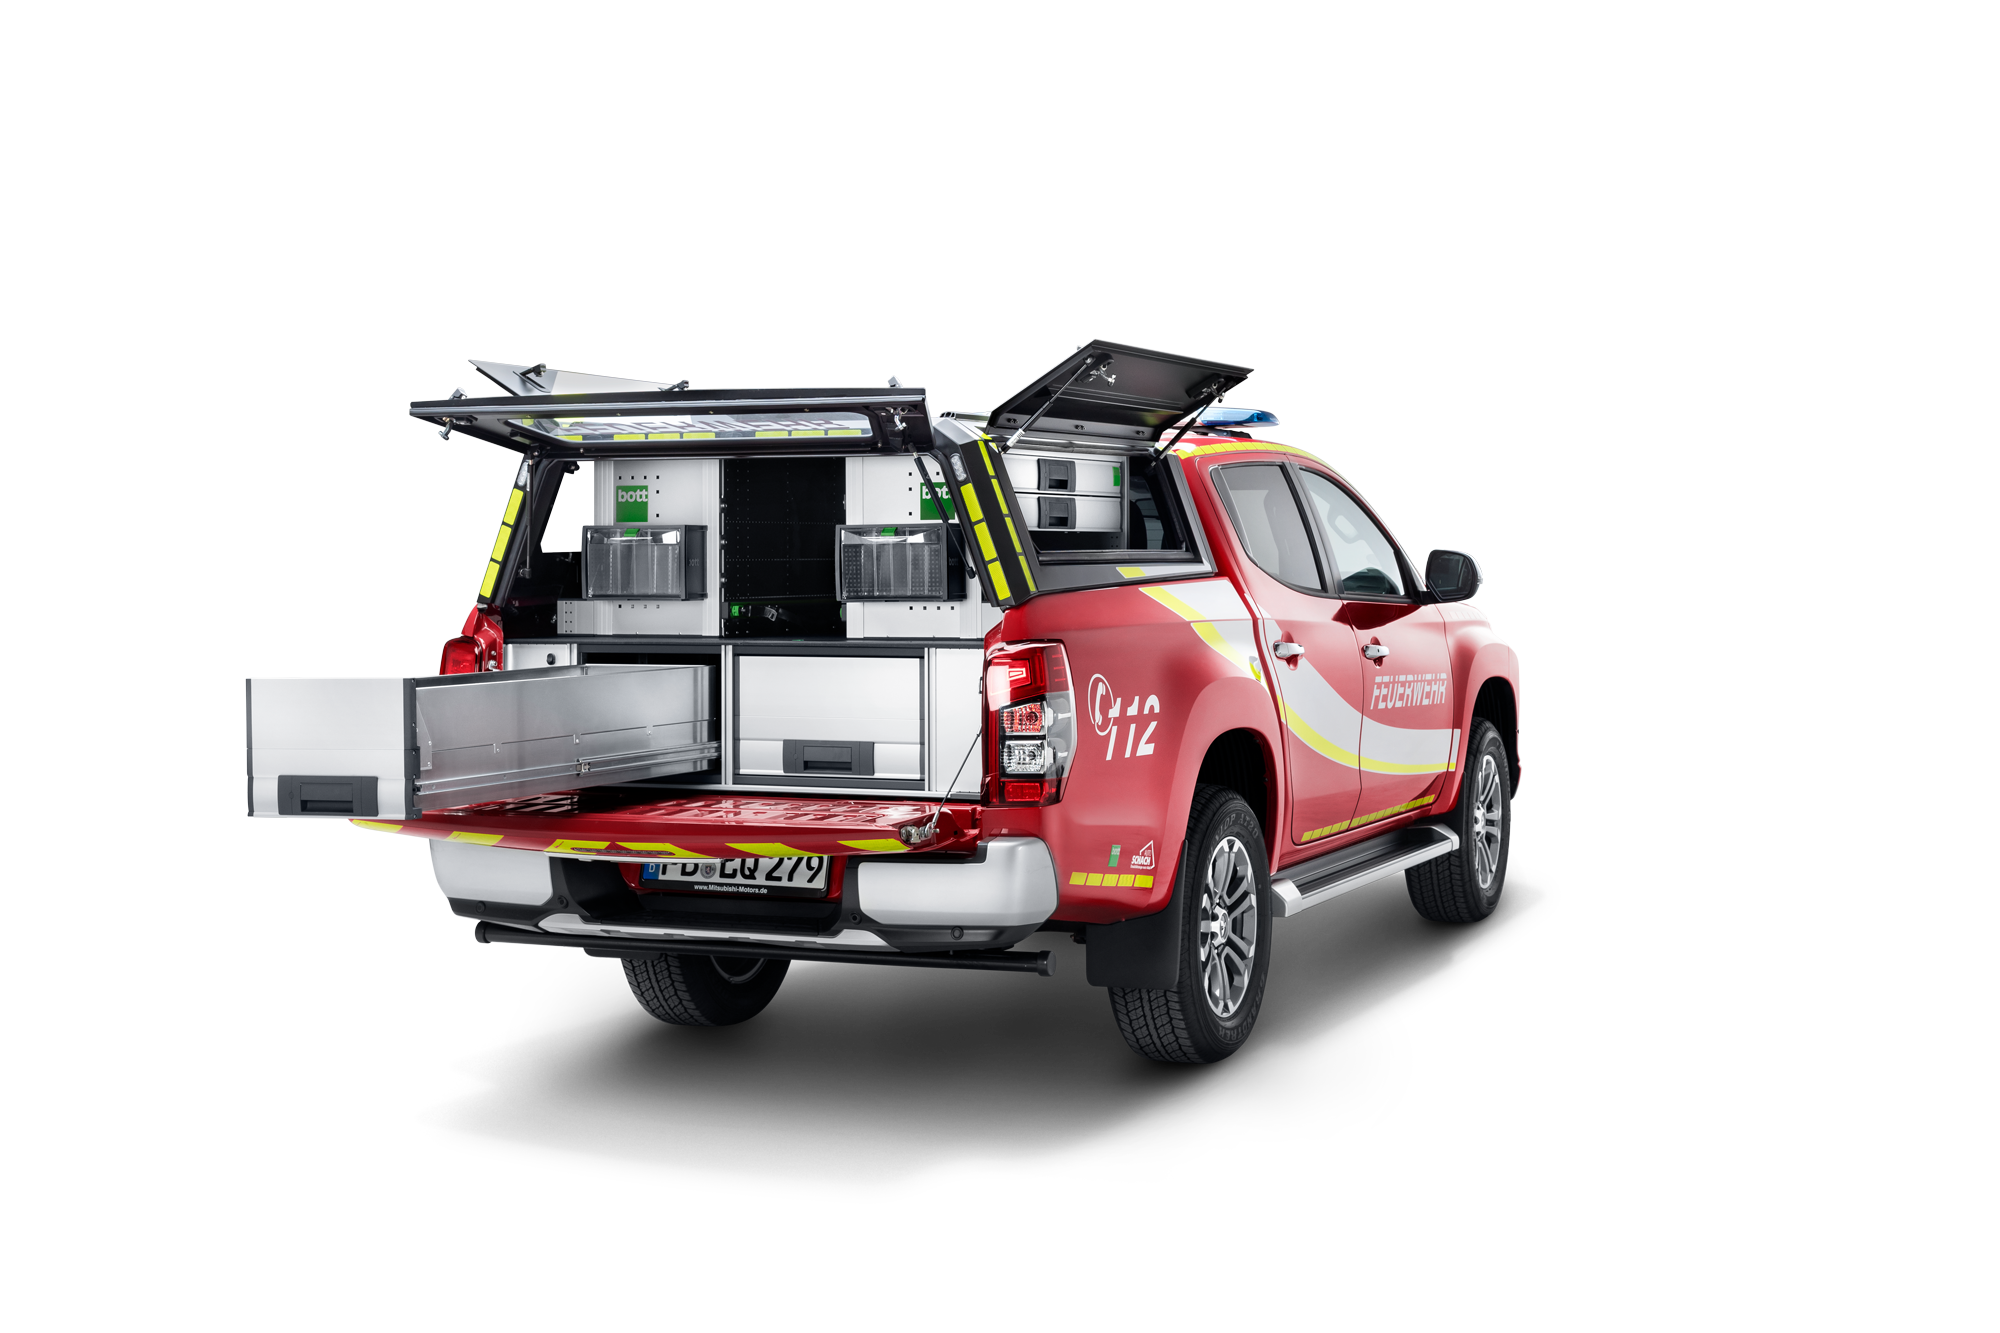 Járműfedélzeti berendezések platformjárművekhez, például Mitsubishi tűzoltóautóhoz való berendezések